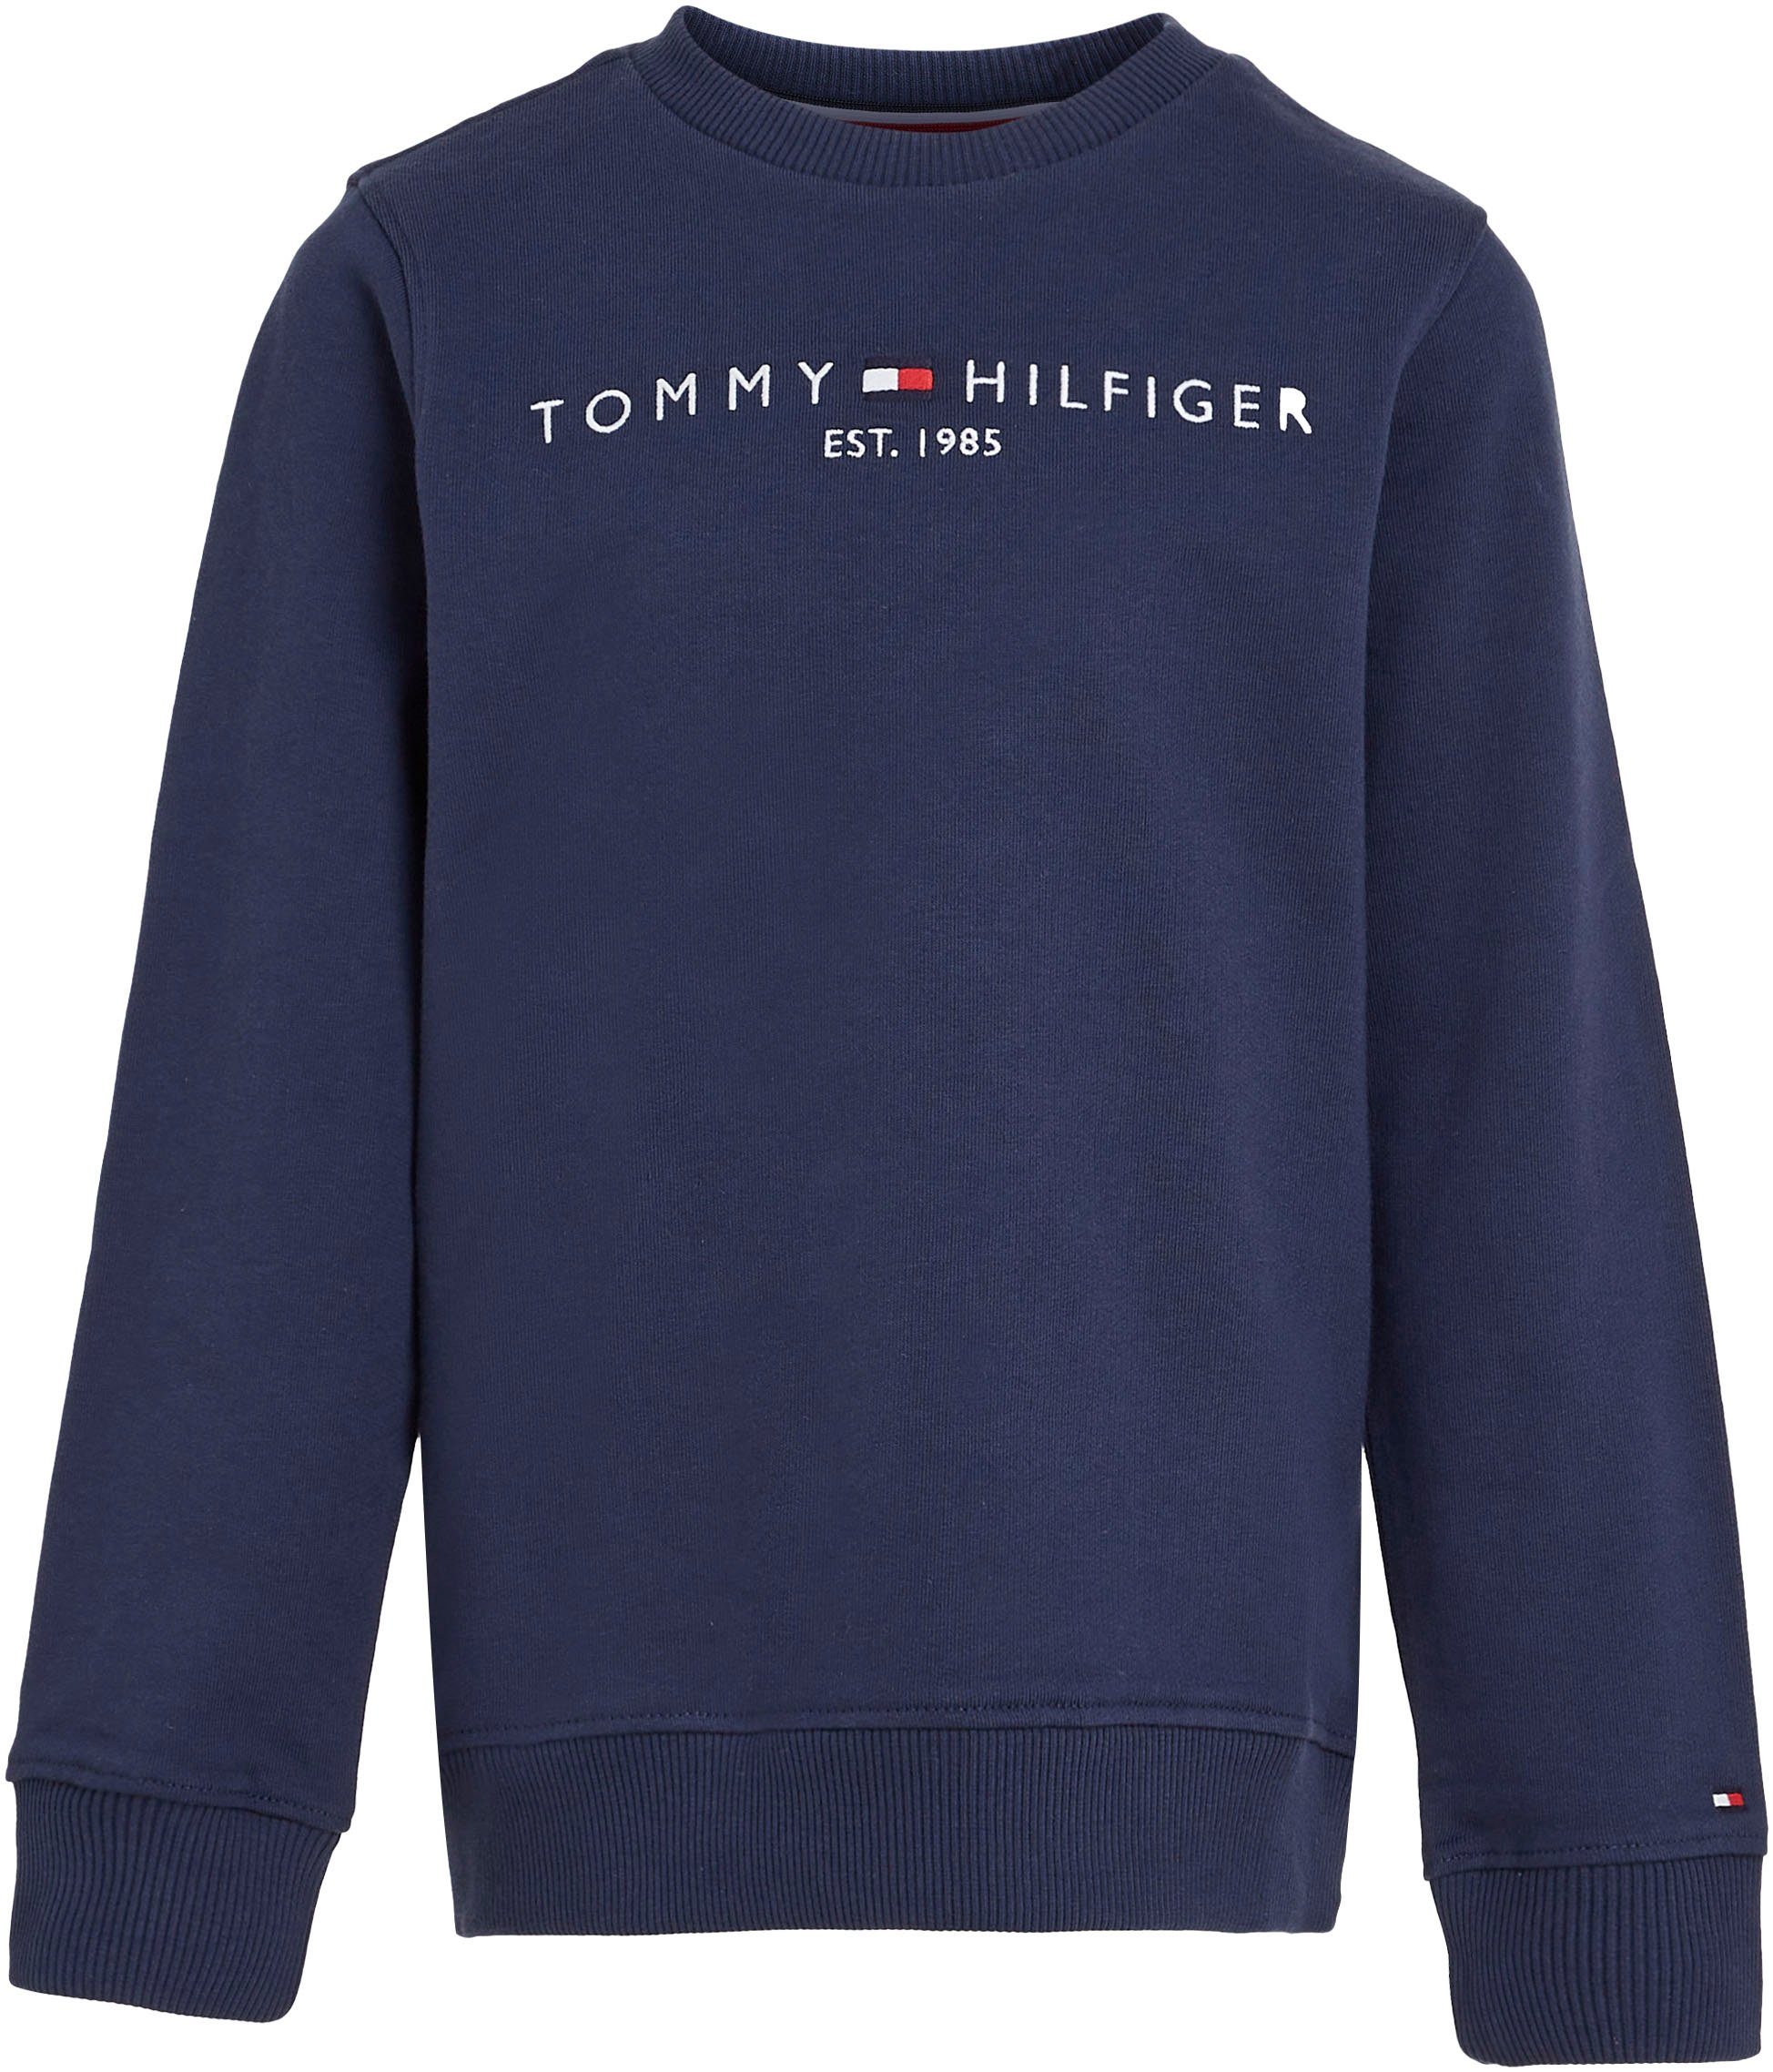 Tommy Hilfiger Sweatshirt Kinder Mädchen und Jungen Junior MiniMe,für Kids ESSENTIAL SWEATSHIRT